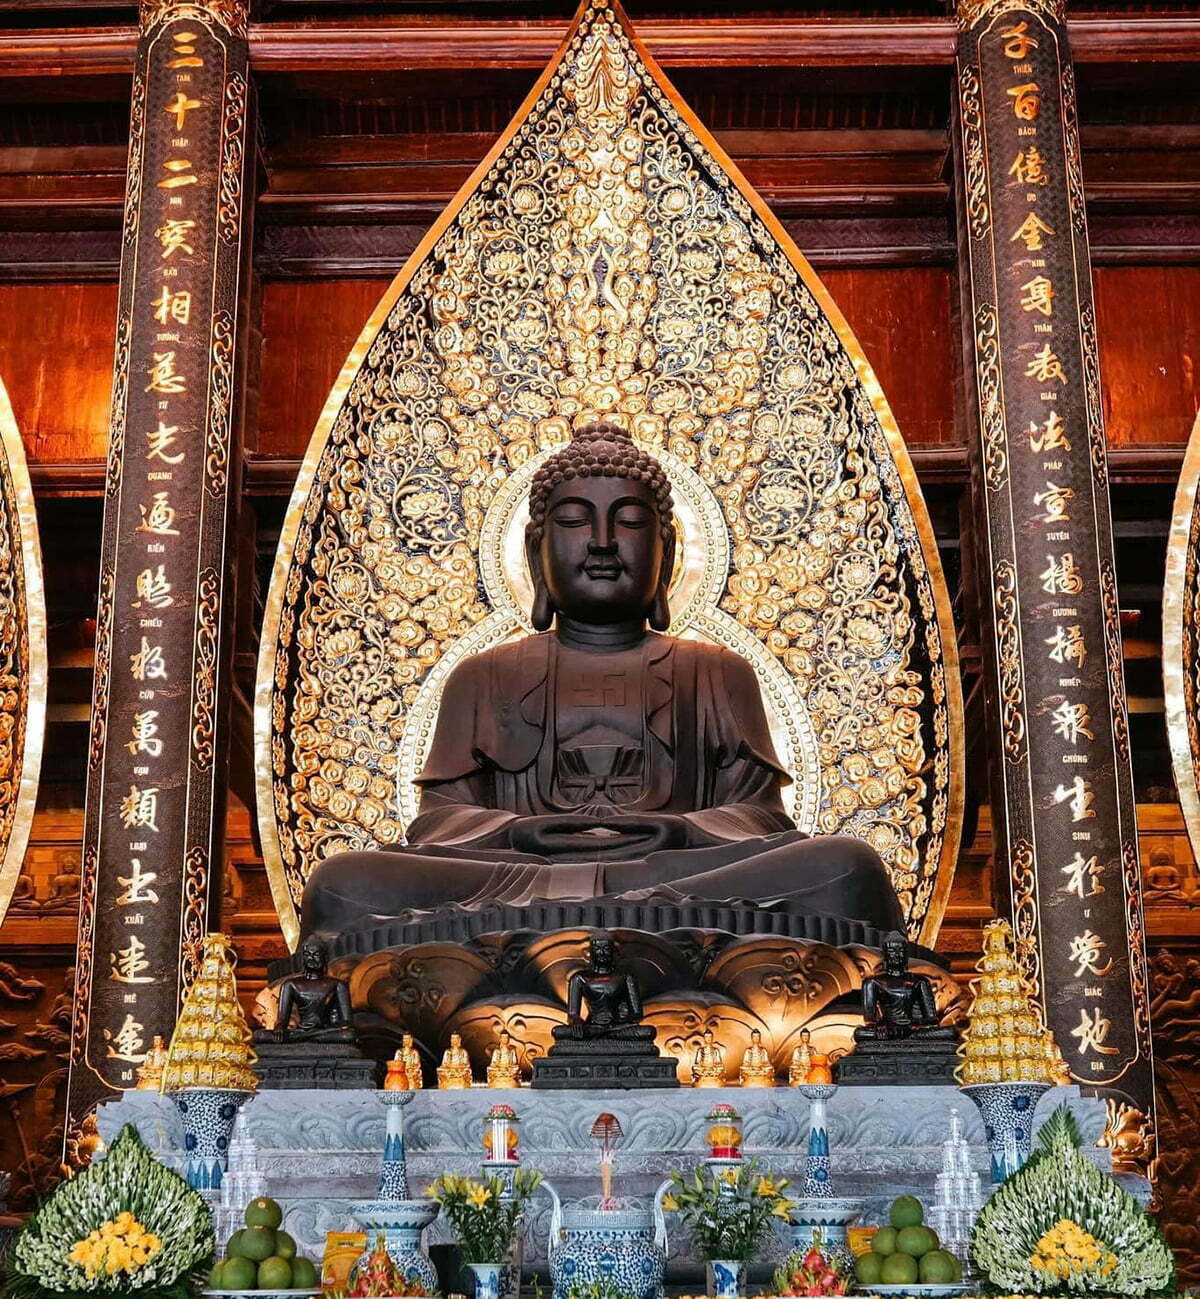 Tour chùa Tam Chúc ngắm tượng phật